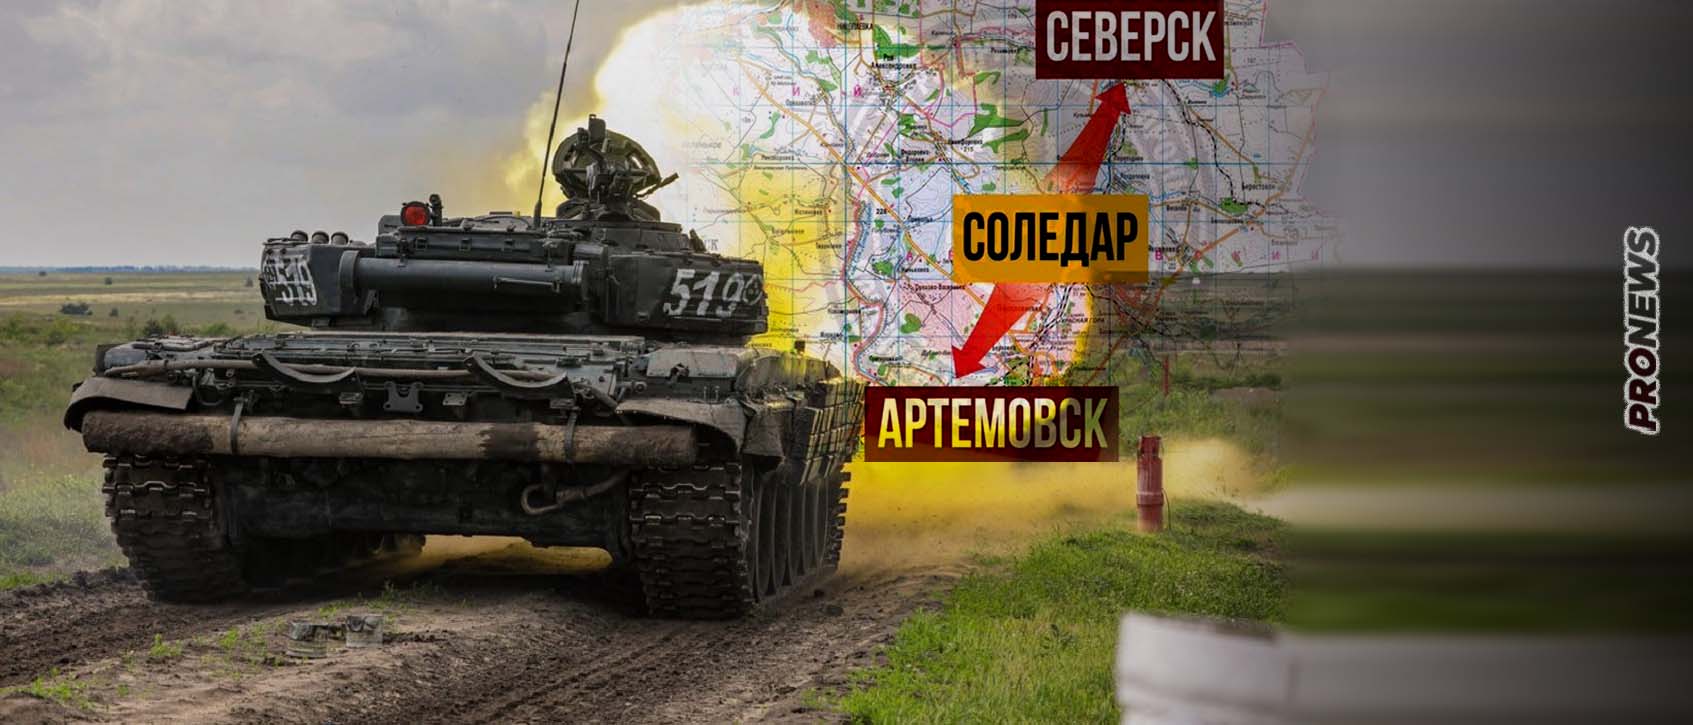 Οι Ουκρανοί διοικητές ζητούν από το Κίεβο να δώσει εντολή υποχώρησης μετά την ήττα στο Σολεντάρ.